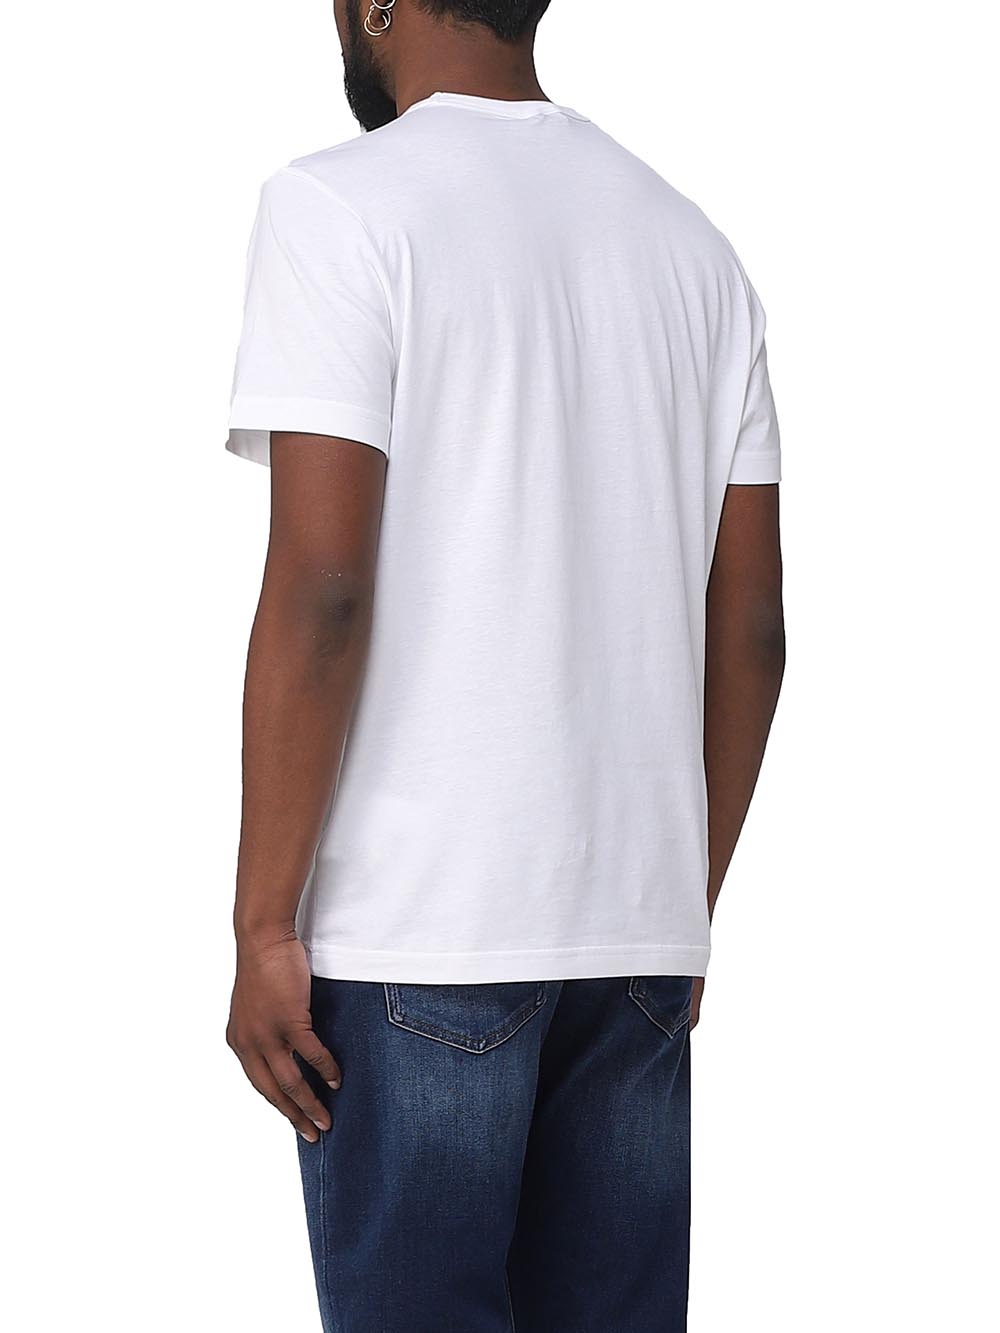 Colmar T-shirt Uomo 7563 6sh Bianco